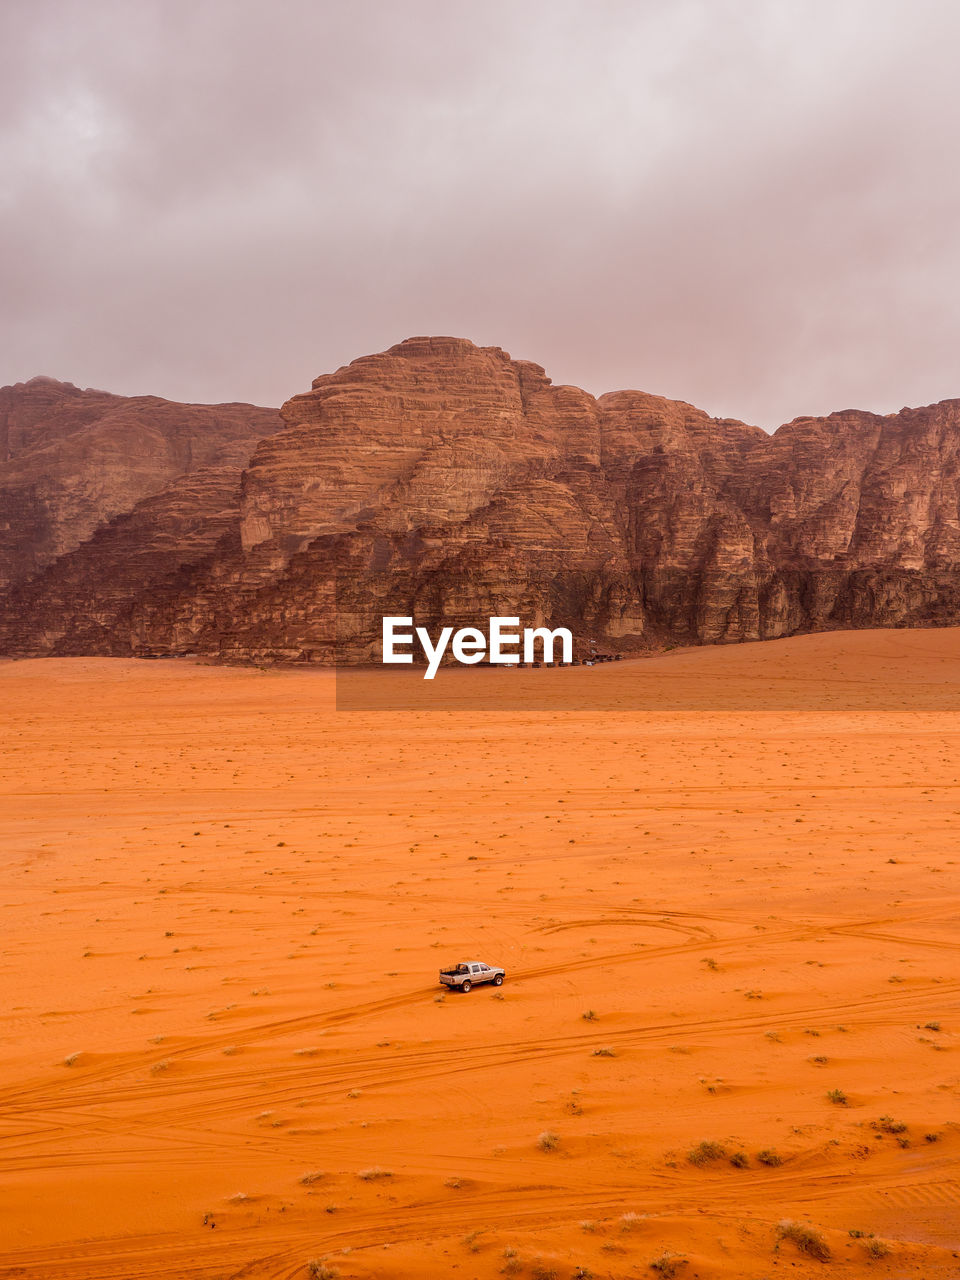 Scenic view of wadi rum desert in jordan.